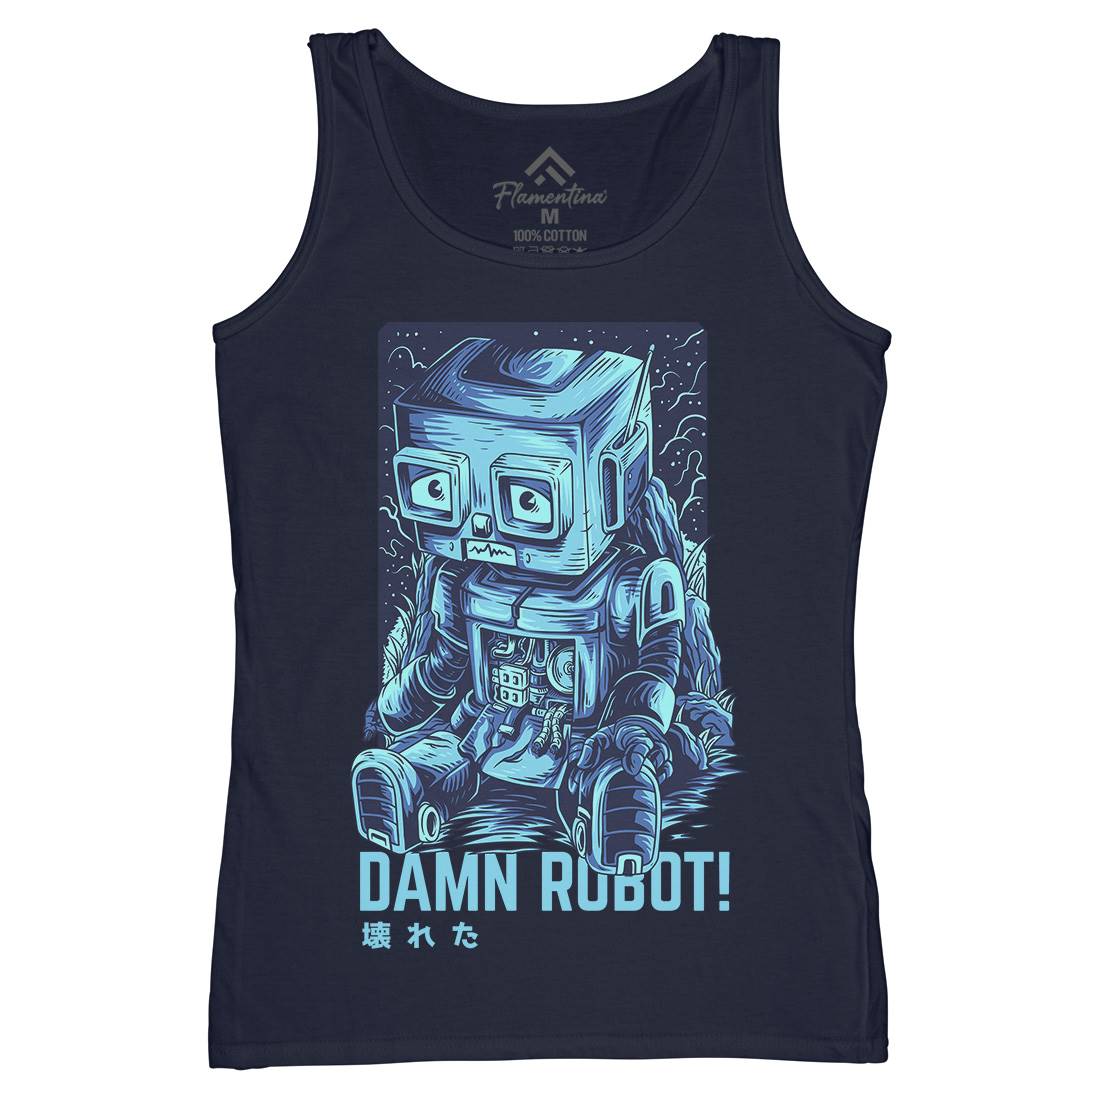 Damn Robot Womens Organic Tank Top Vest Space D742